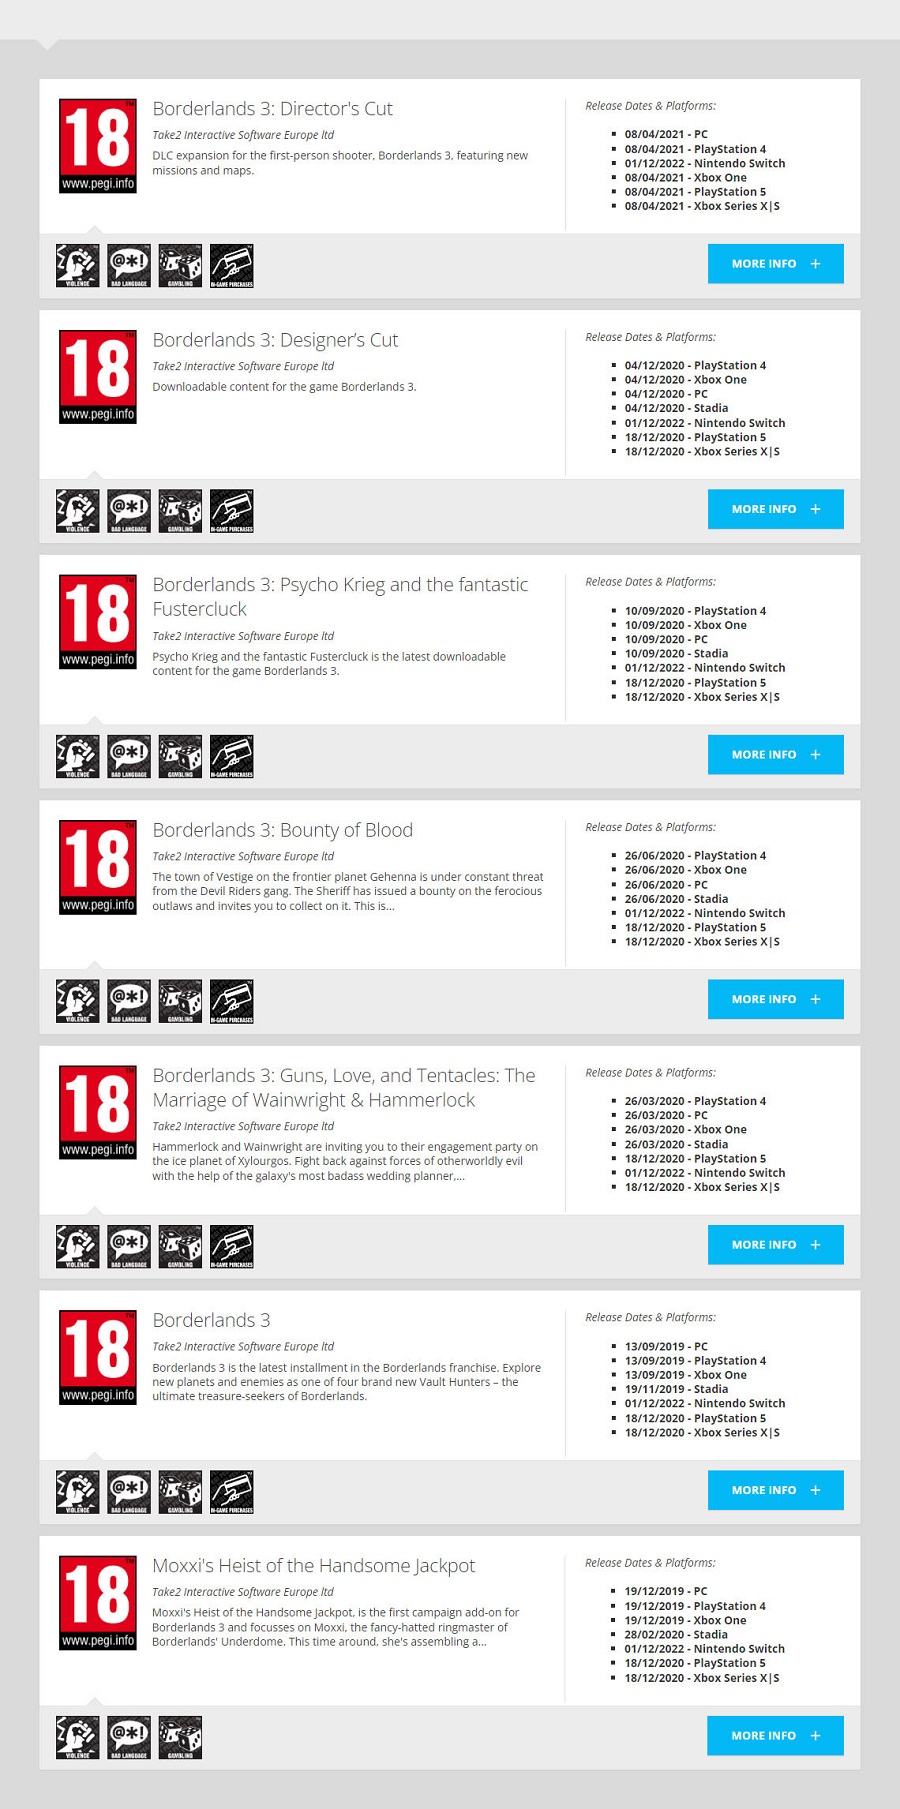 Скоро анонс? Версия Borderlands 3 для консоли Nintendo Switch получила возрастной рейтинг от Европейской комиссии PEGI-2